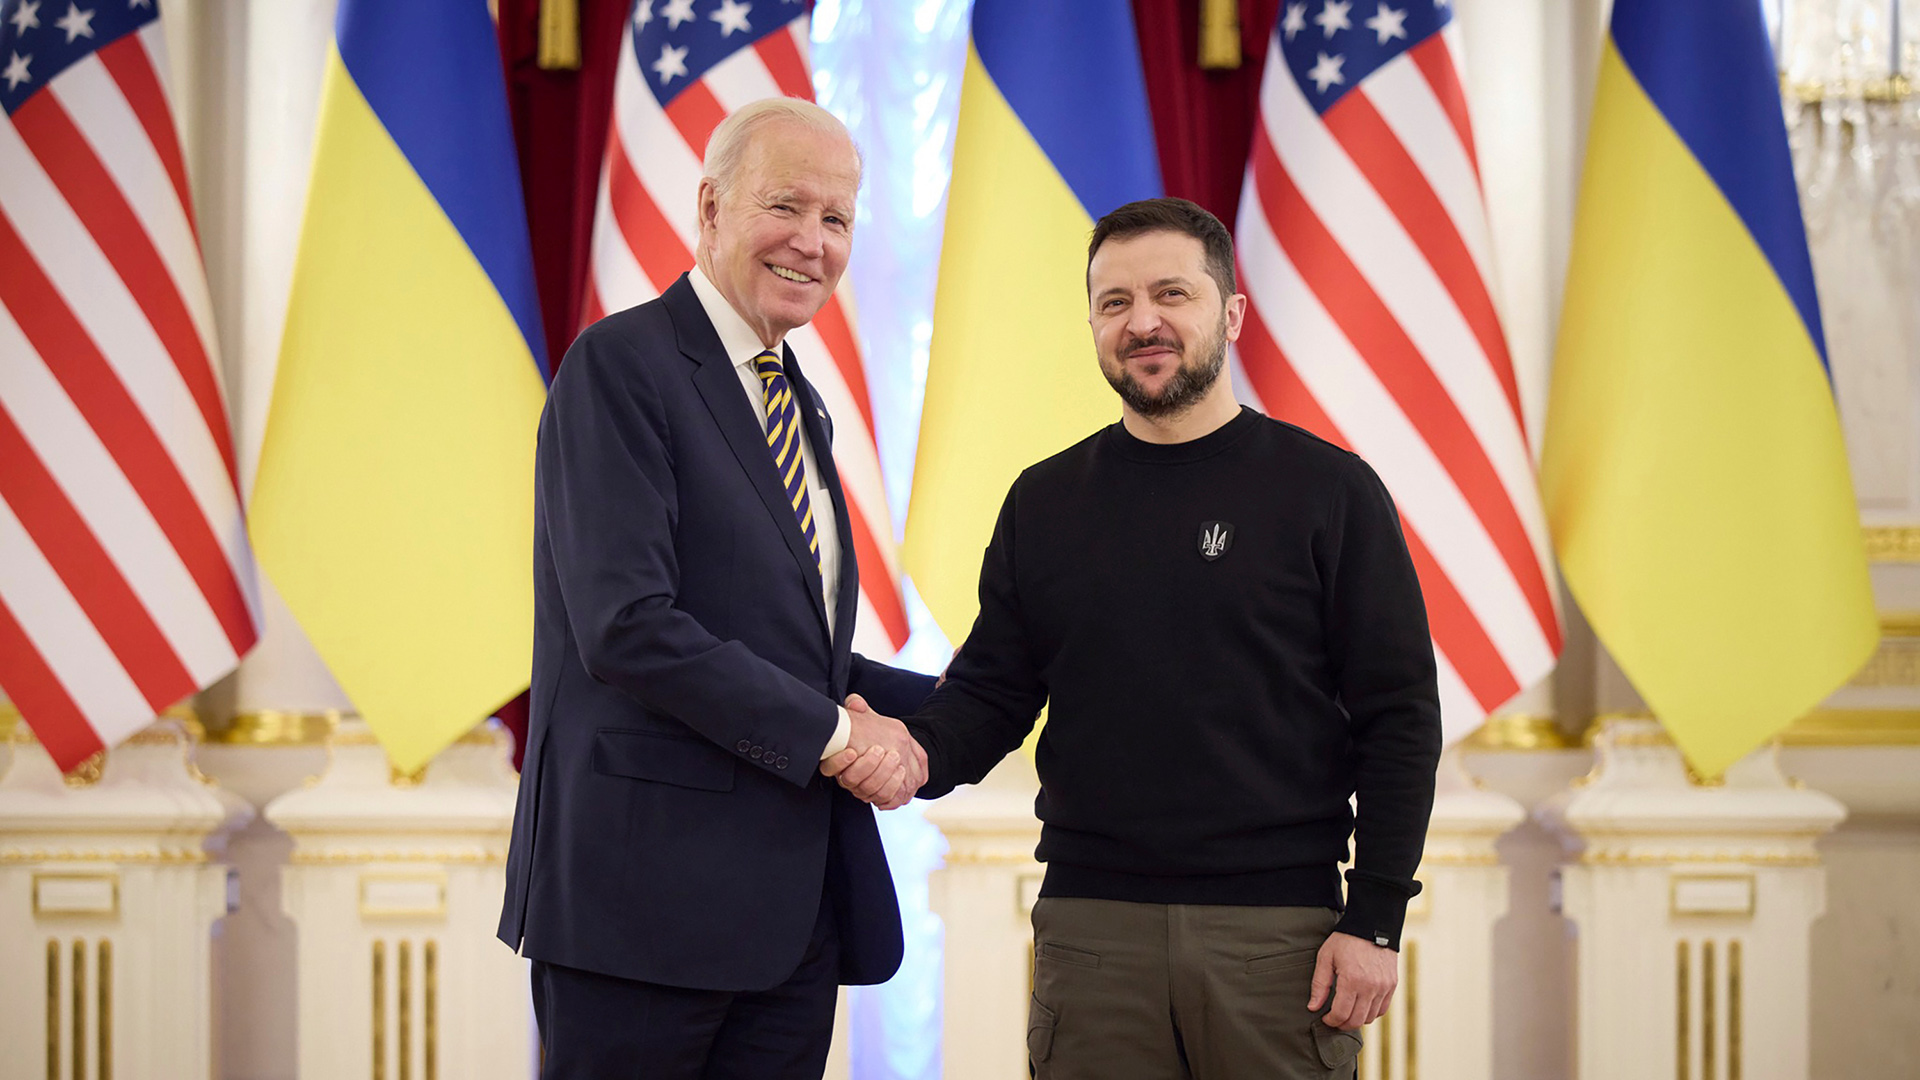 Joe Biden, Präsident der USA, der Wolodymyr Selenskyj, Präsident der Ukraine, bei seinem Besuch in Kiew die Hand schüttelt. | dpa